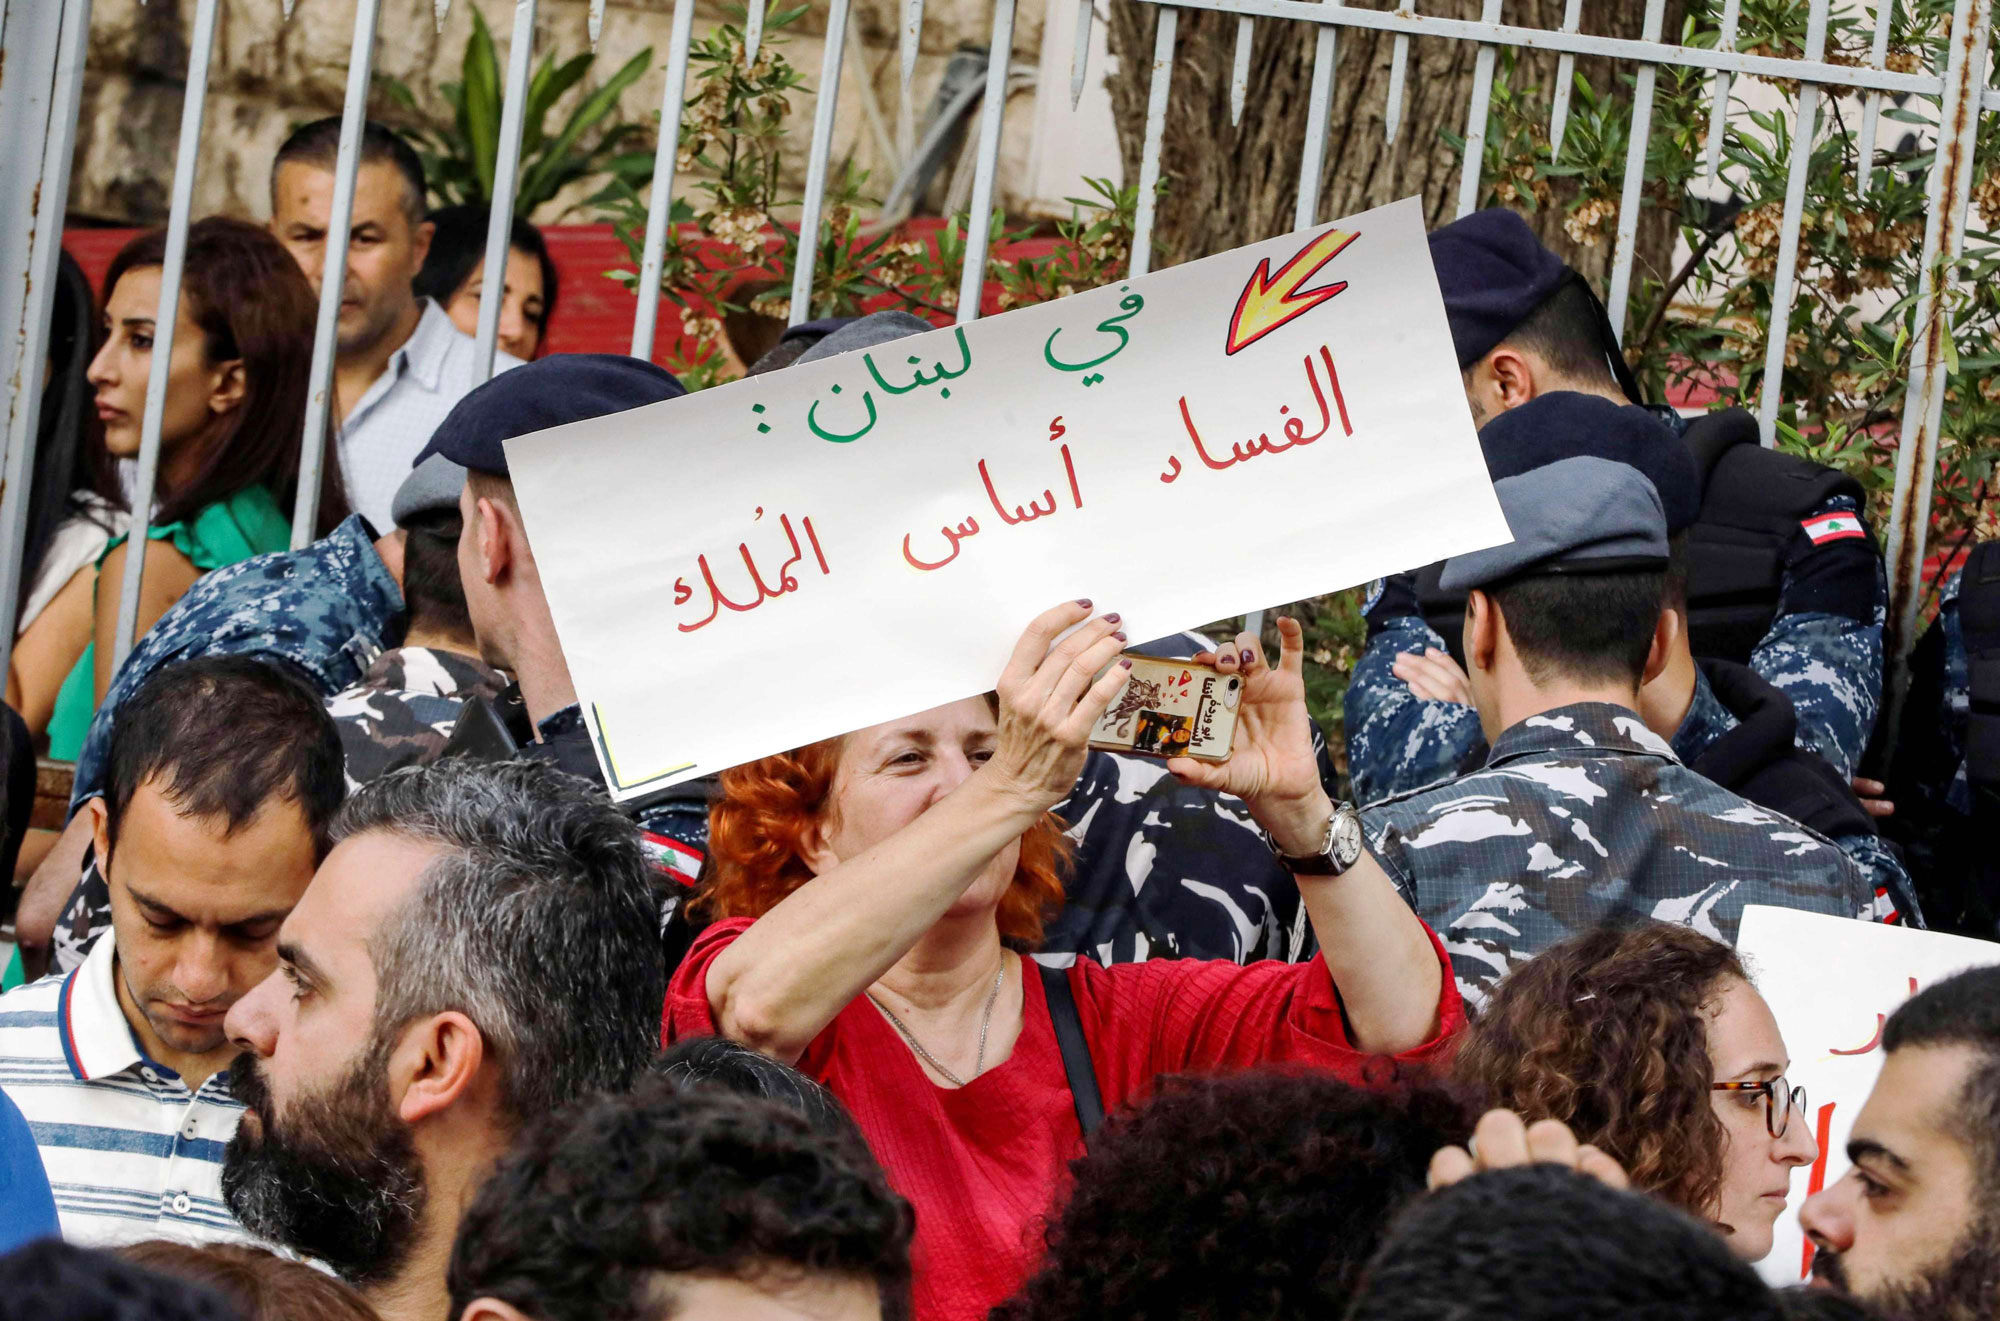 لبنان شهد أكبر موجة احتجاجات في 2019 تنديدا بالفساد وبالنخبة الحاكمة